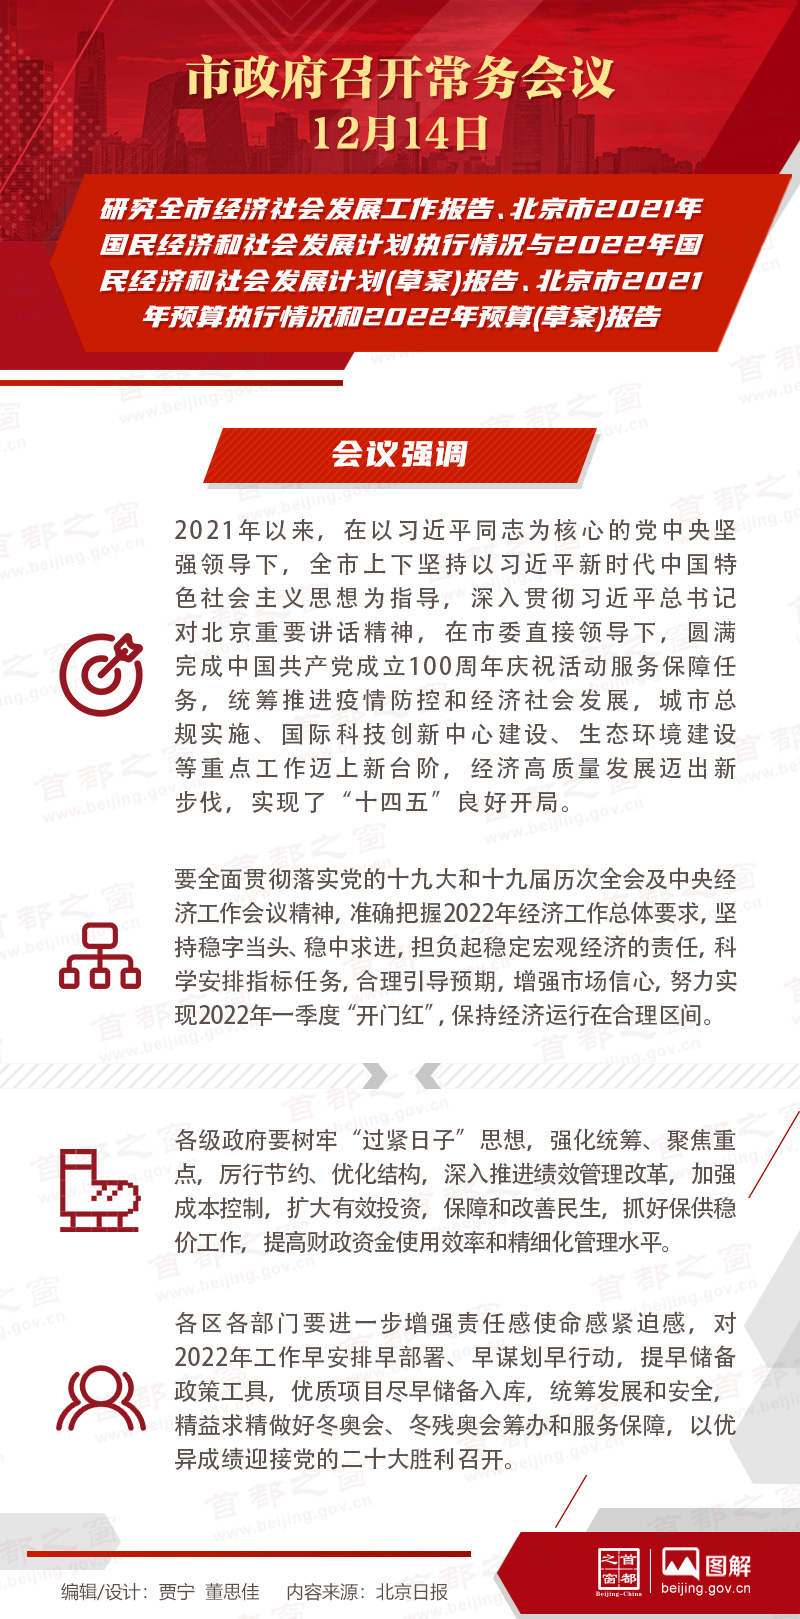 市政府常务会议：研究全市经济社会发展工作报告、北京市2021年国民经济和社会发展计划执行情况与2022年国民经济和社会发展计划(草案)报告、北京市2021年预算执行情况和2022年预算(草案)报告